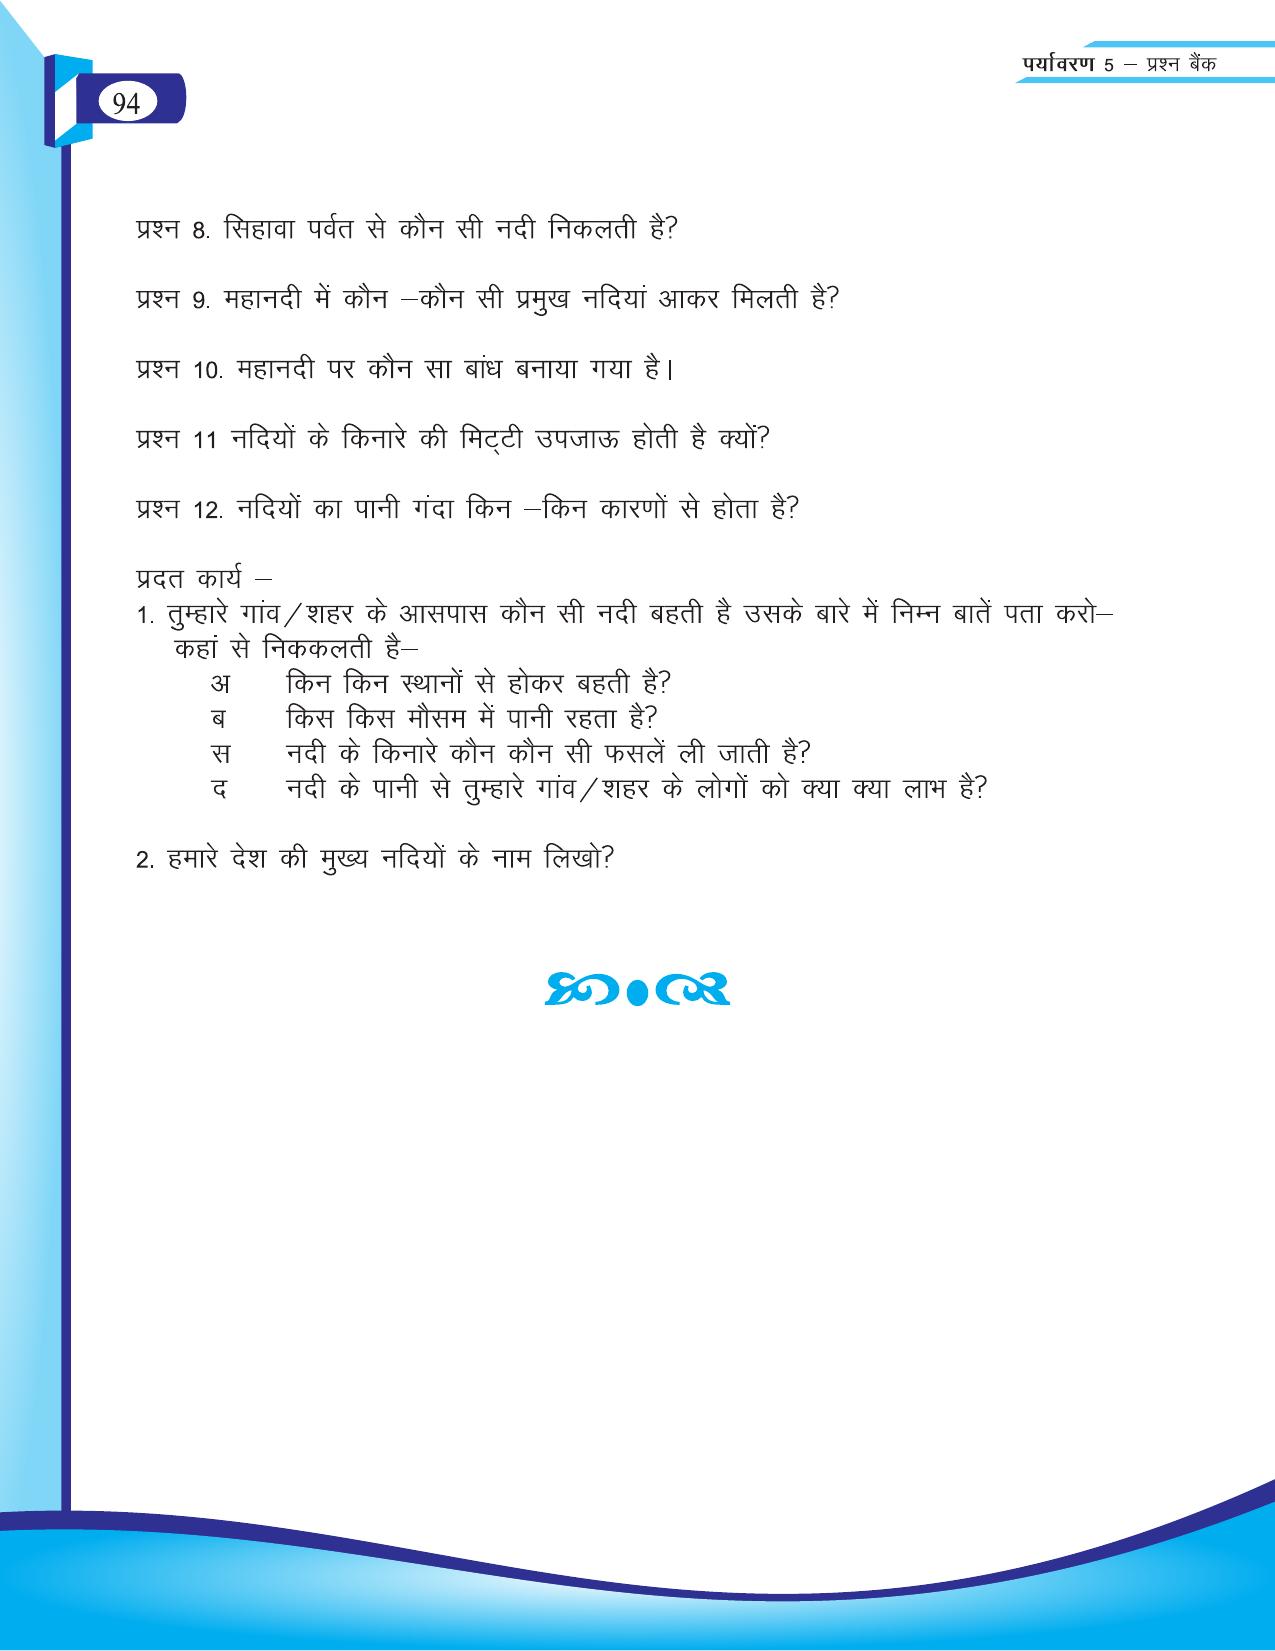 Chhattisgarh Board Class 5 EVS Question Bank 2015-16 - Page 20